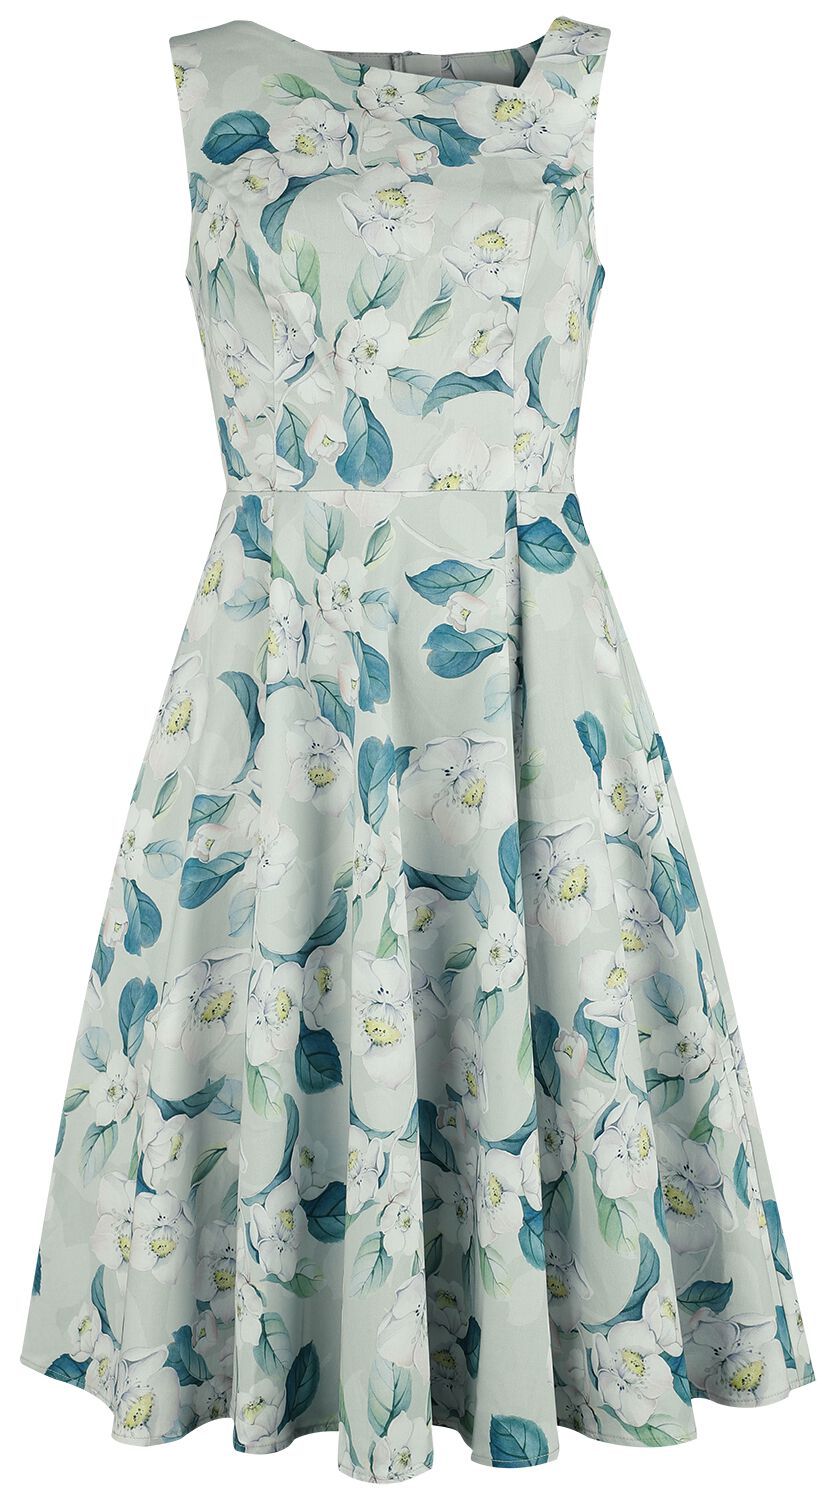 H&R London - Rockabilly Kleid knielang - Rey Floral Swing Dress - XS bis 4XL - für Damen - Größe 3XL - grün/weiß